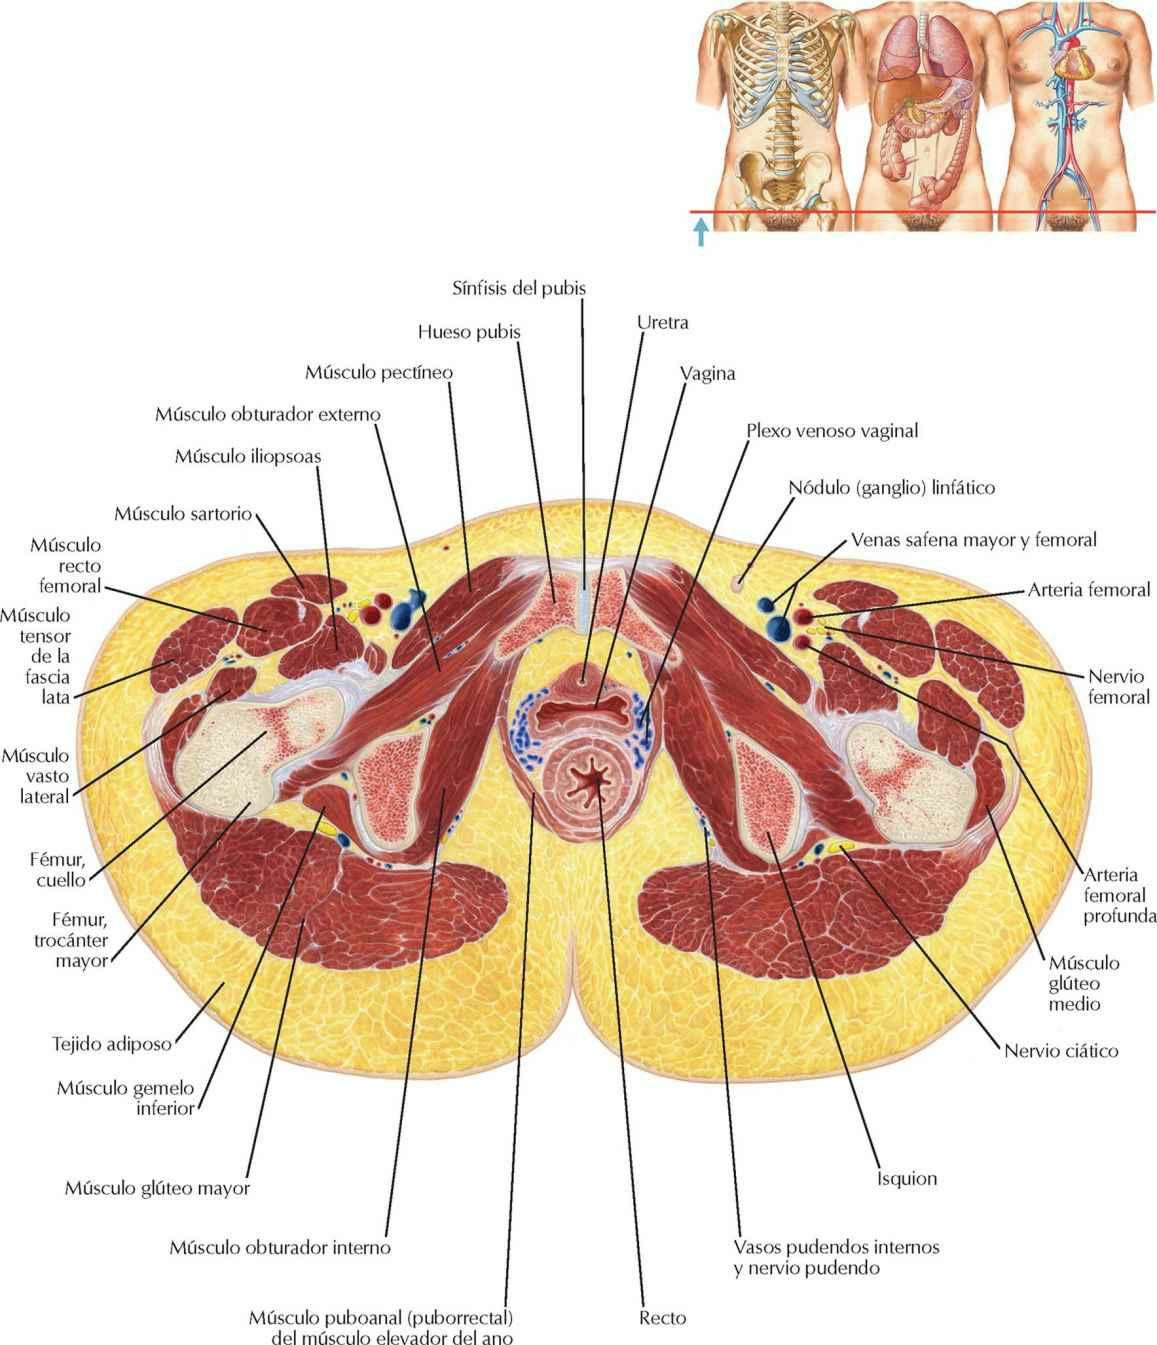 Pelvis femenina: sección transversal de la vagina y la uretra